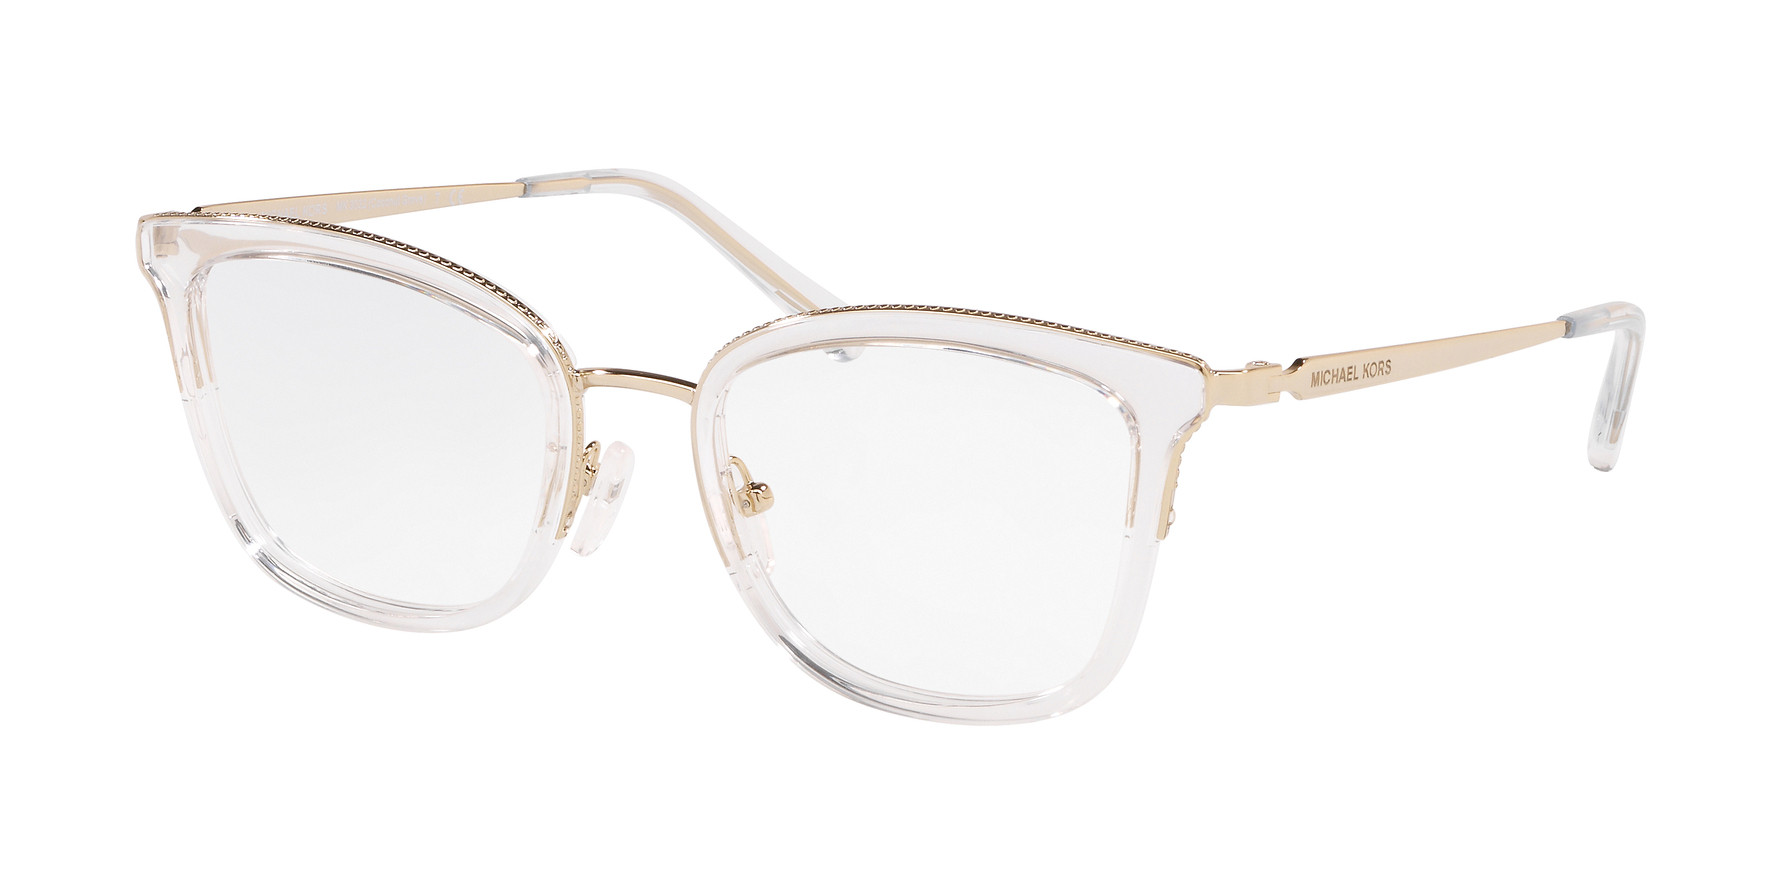 Michael Kors Eyeglasses Coconut-Grove MK3032 Light Gold/Clear 51-19-140mm |  